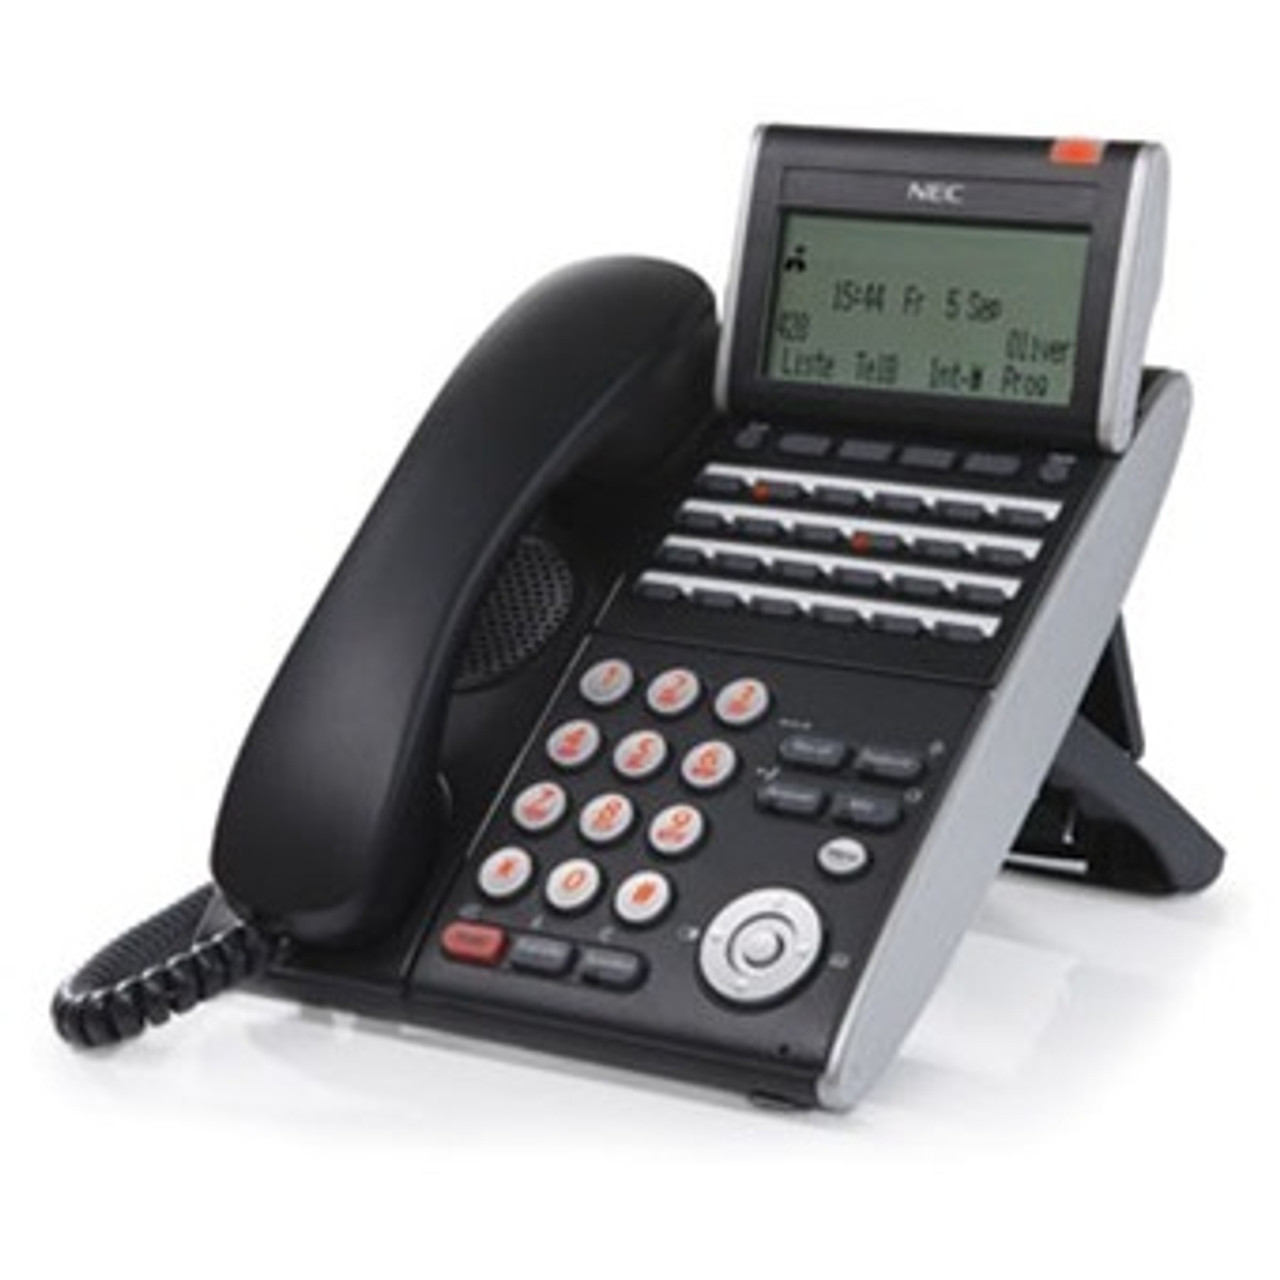 NEC ITL-24D-1 DT700 IP Phone 690004